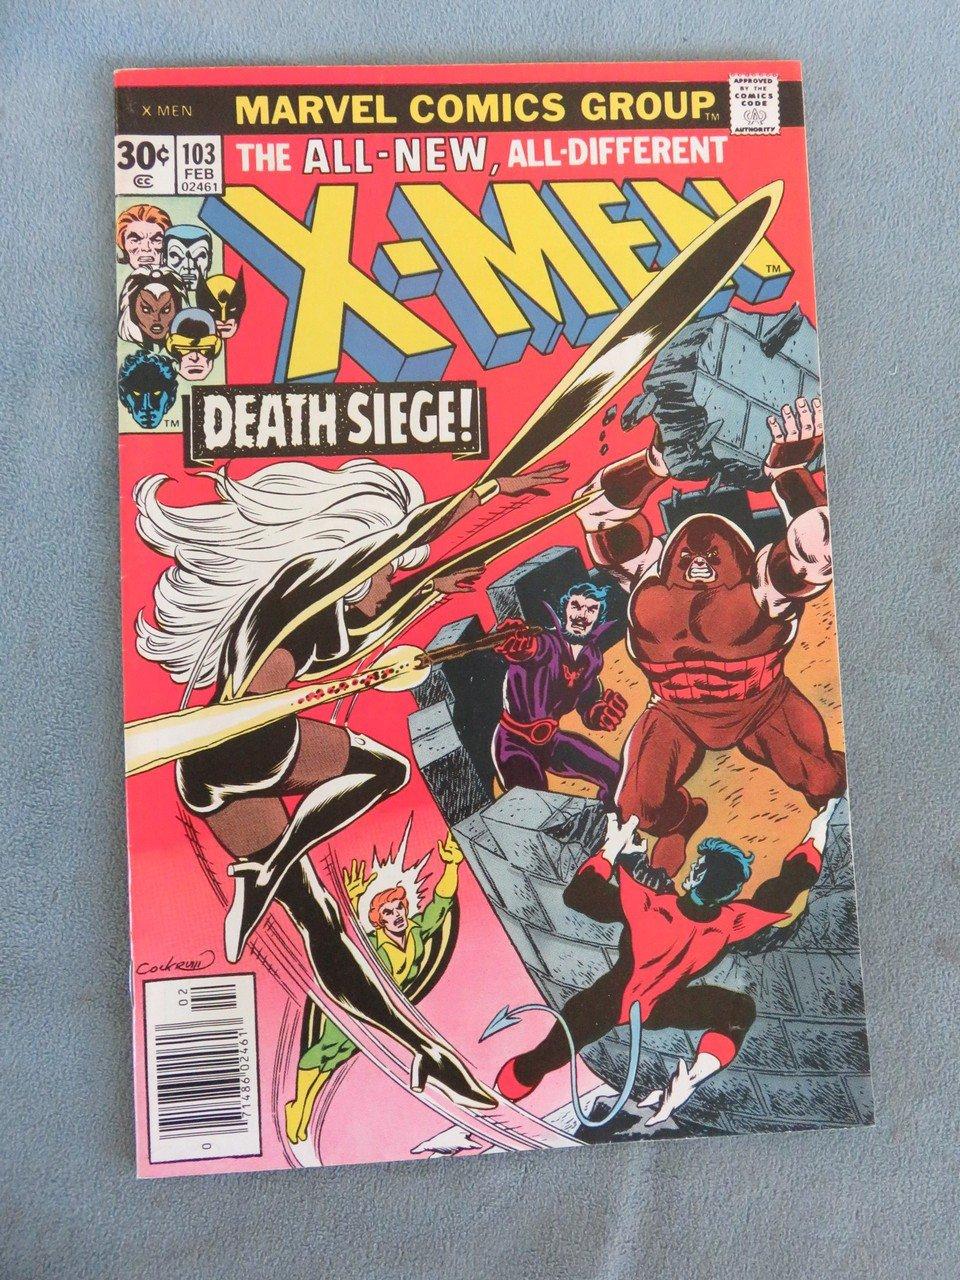 X-Men #103/Classic Juggernaut Cover!